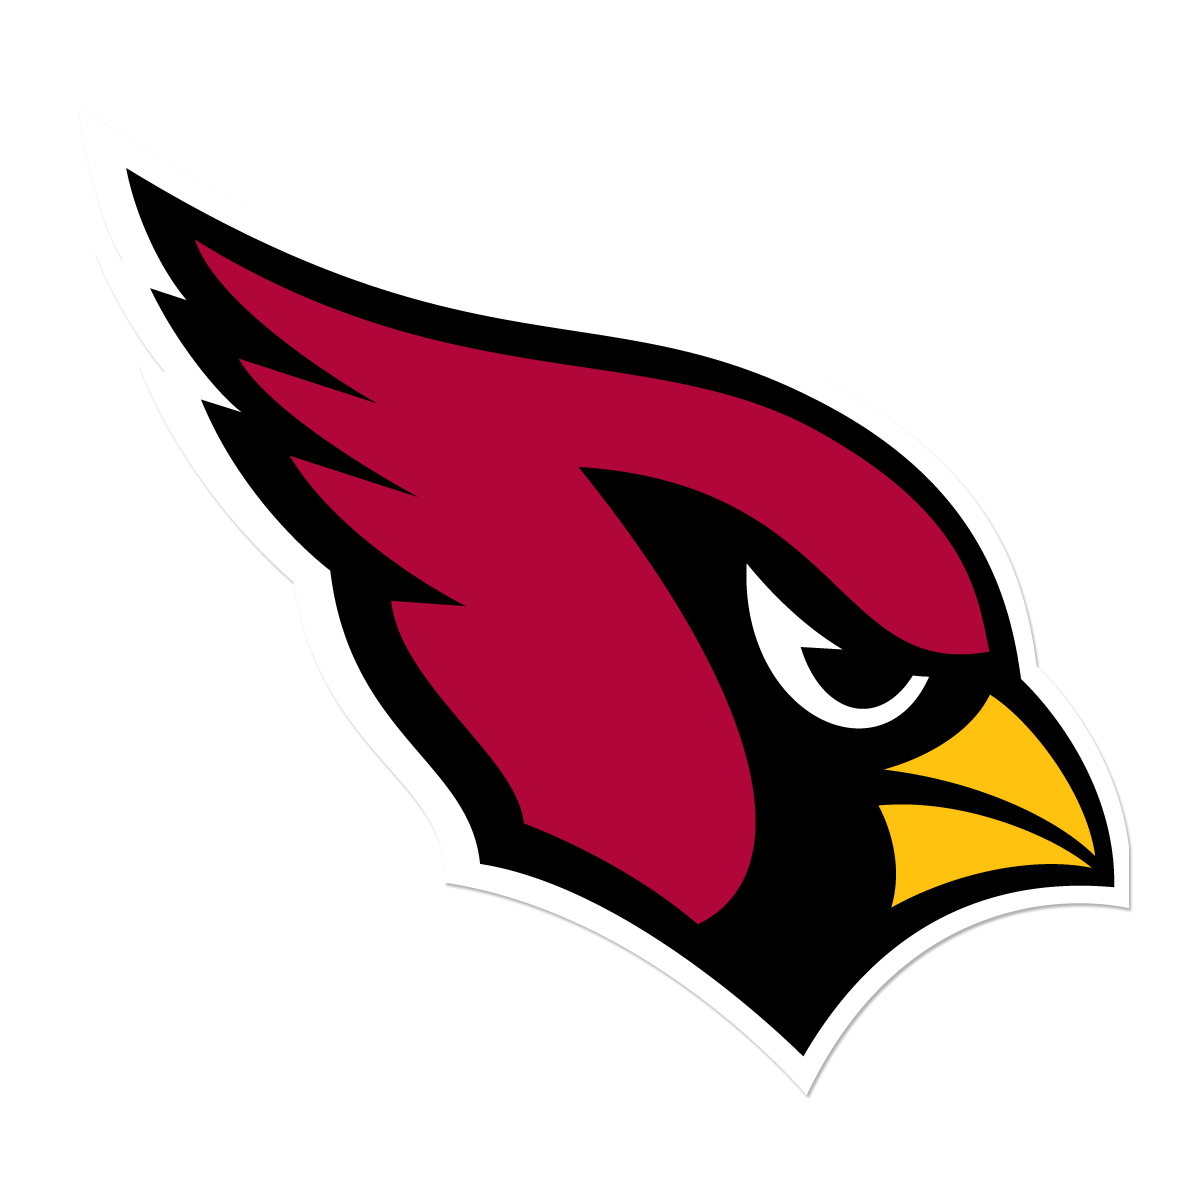 Cardinals Logo PNG Photos